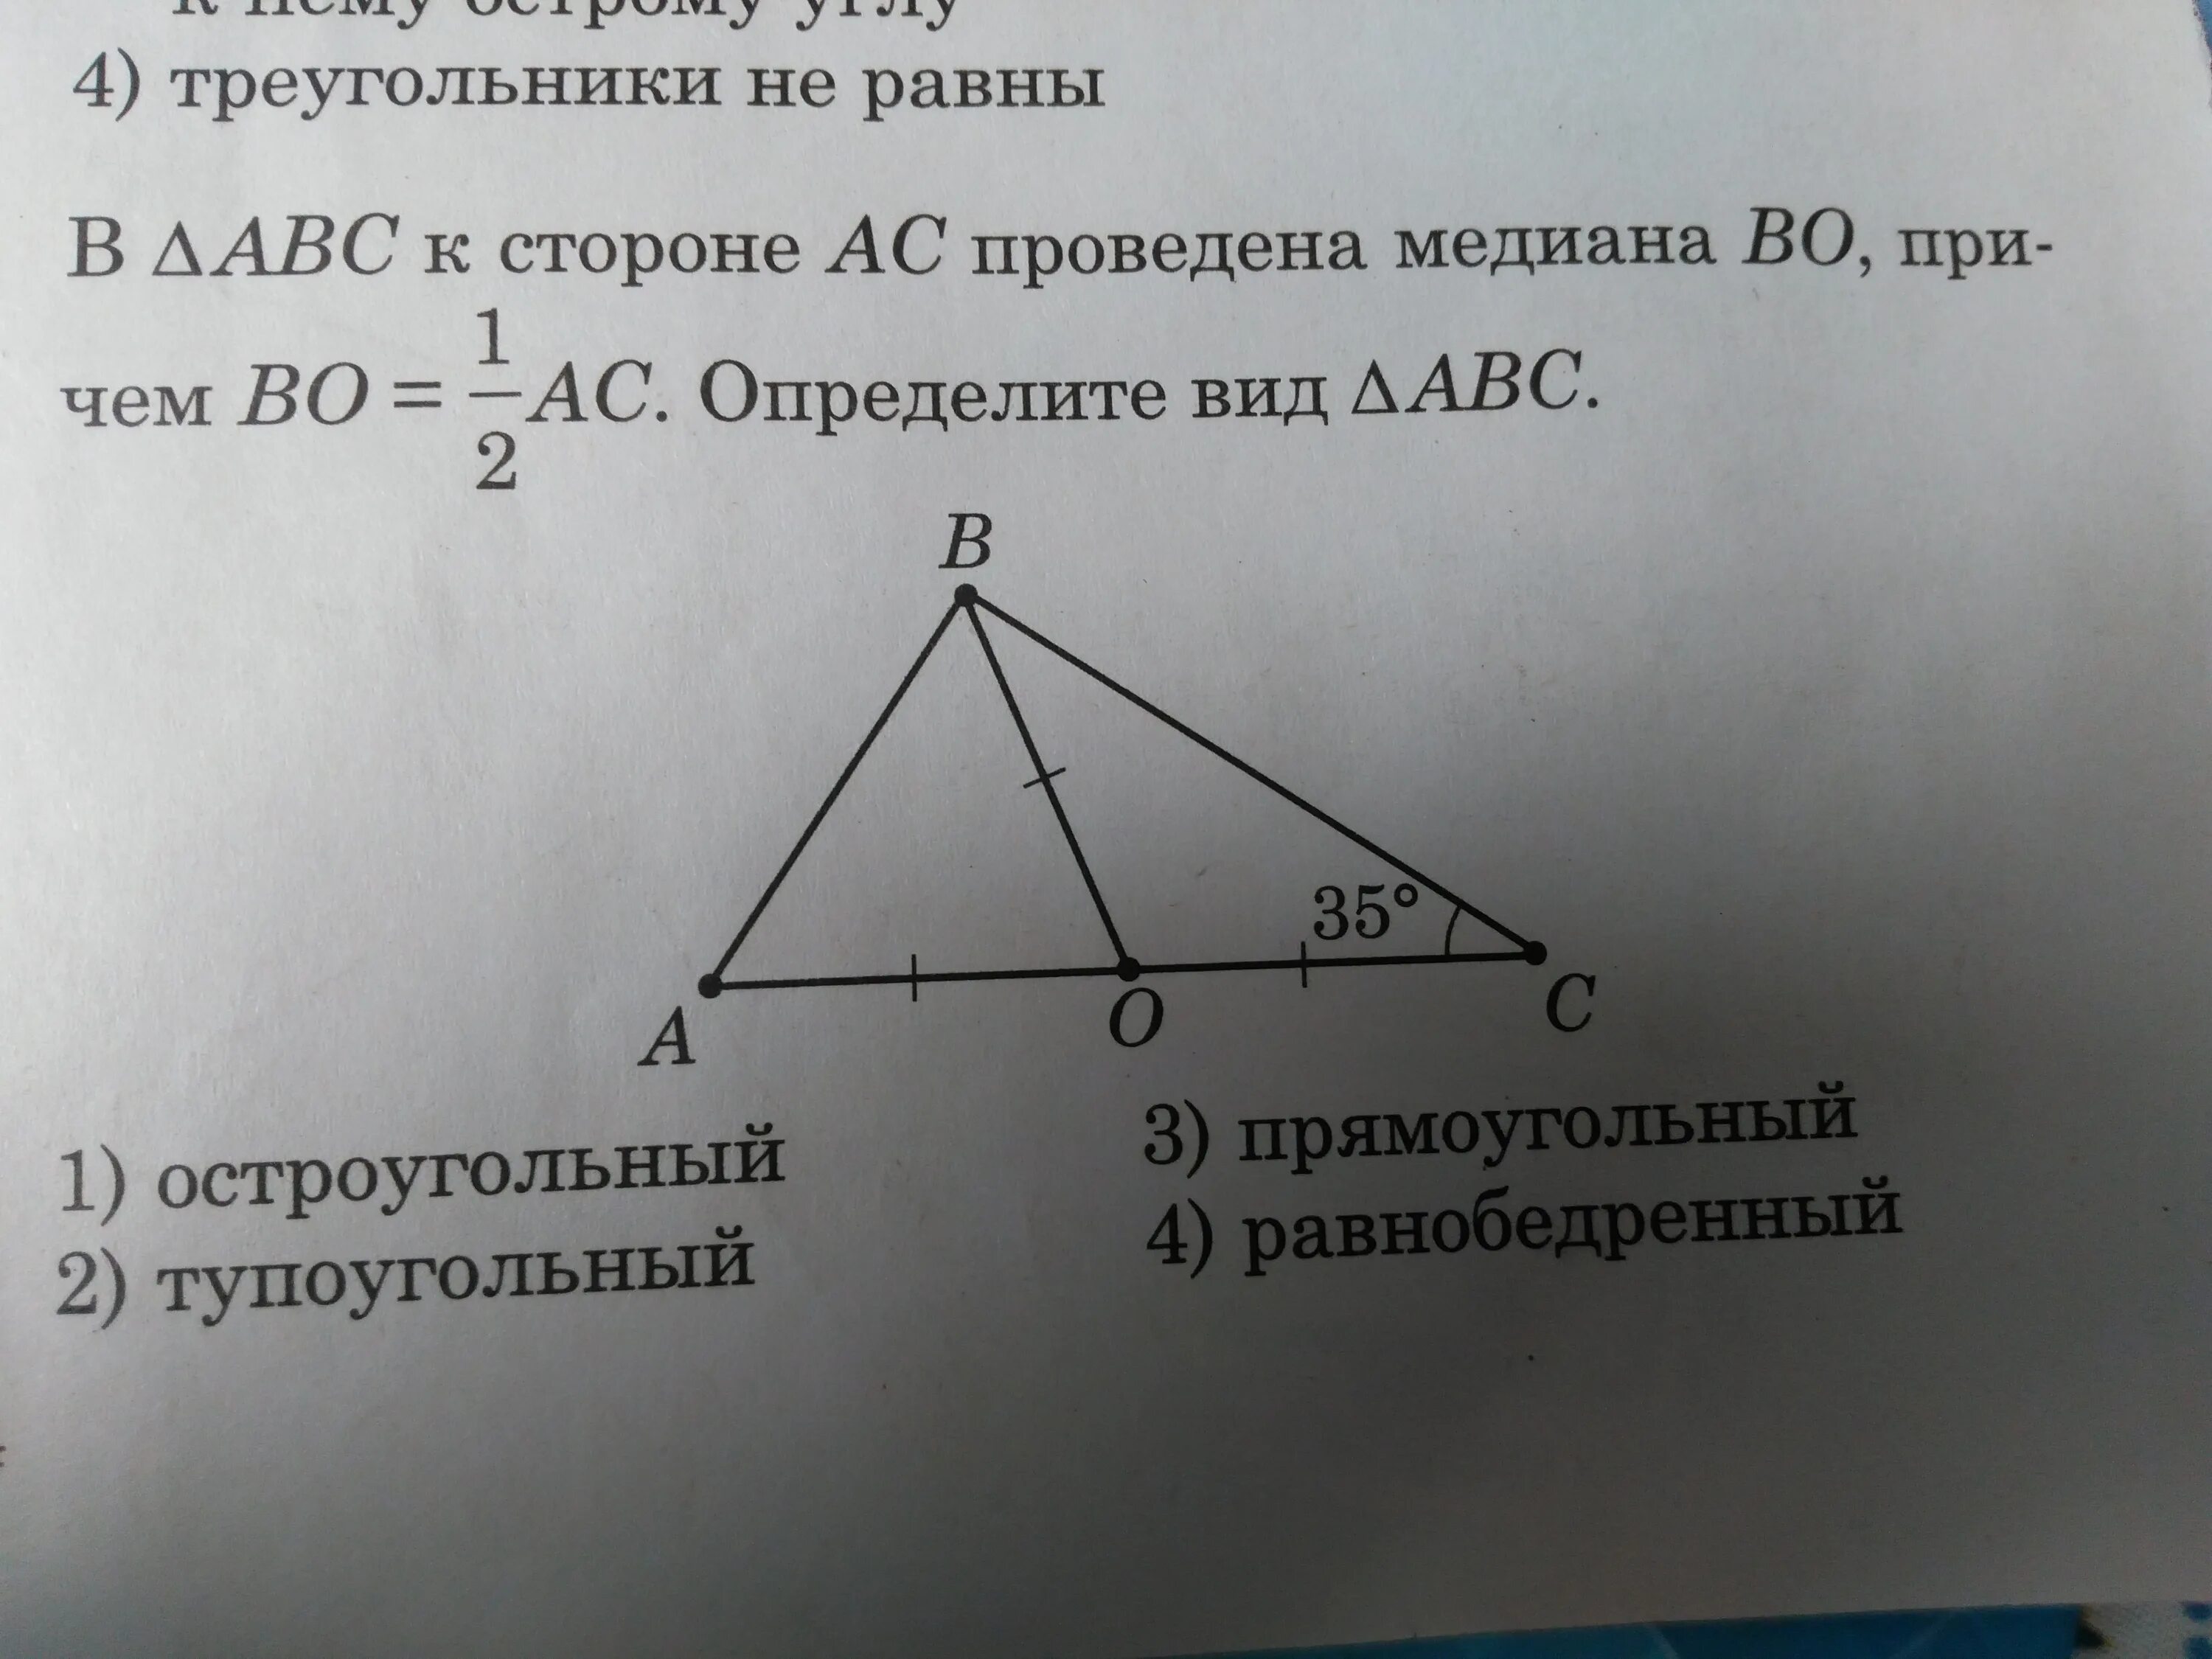 В треугольнике abc c 900. Опрелелите вид треугольник. Отметь треугольники которые содержат сторону MN. Отметь треугольники которые содержат сторону Ен. Найдите медиану, проведенную к стороне АС..